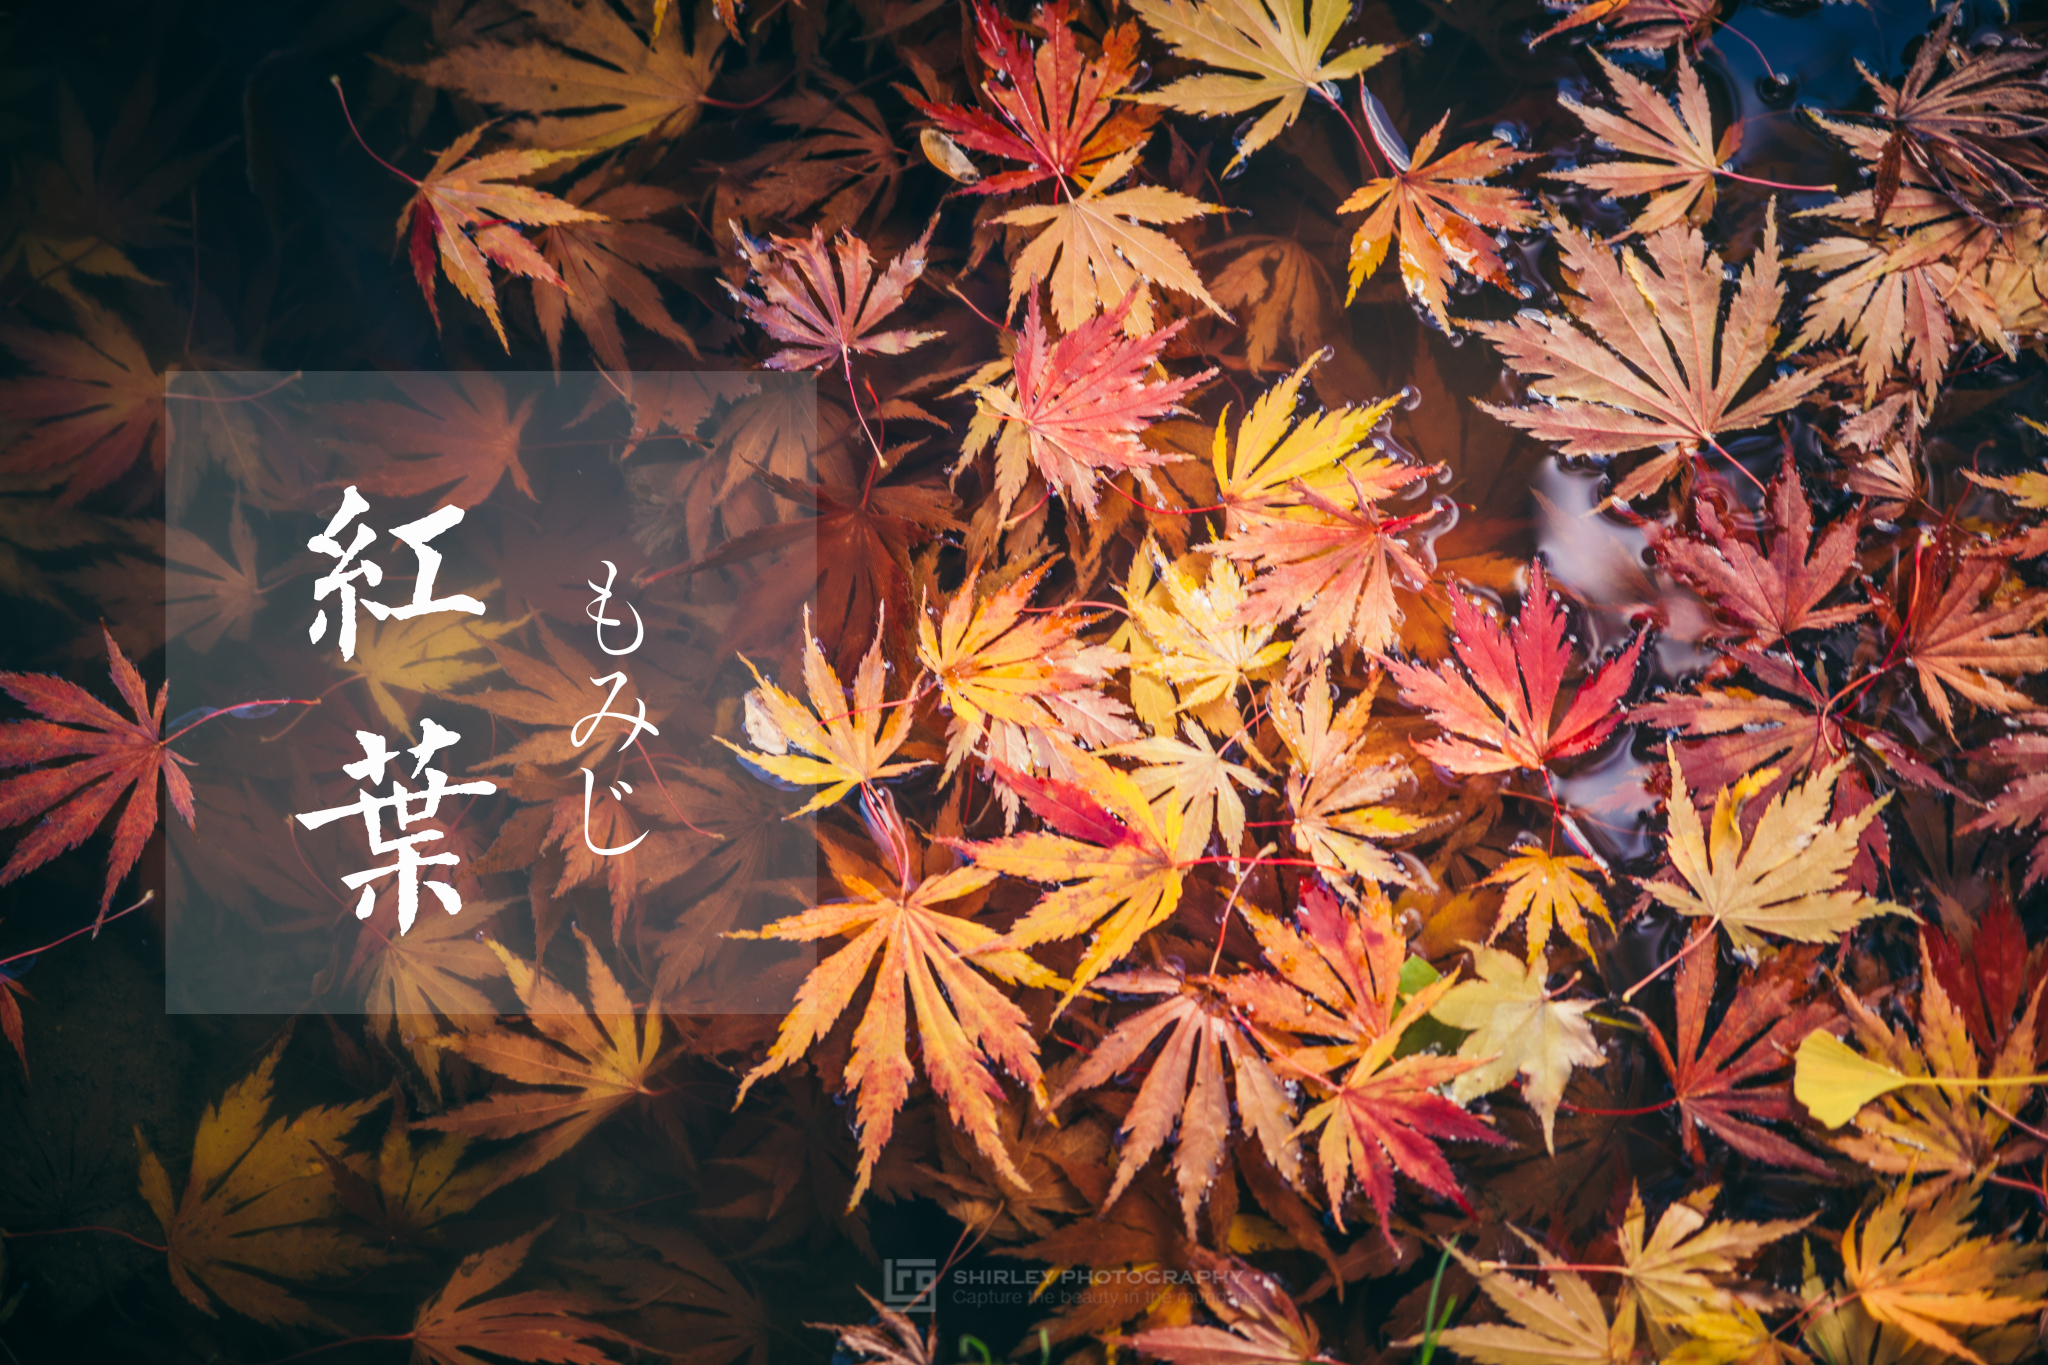 霜染枫林醉 红叶见倾时 一首无尽的秋日风物诗 日本 攻略游记 途牛